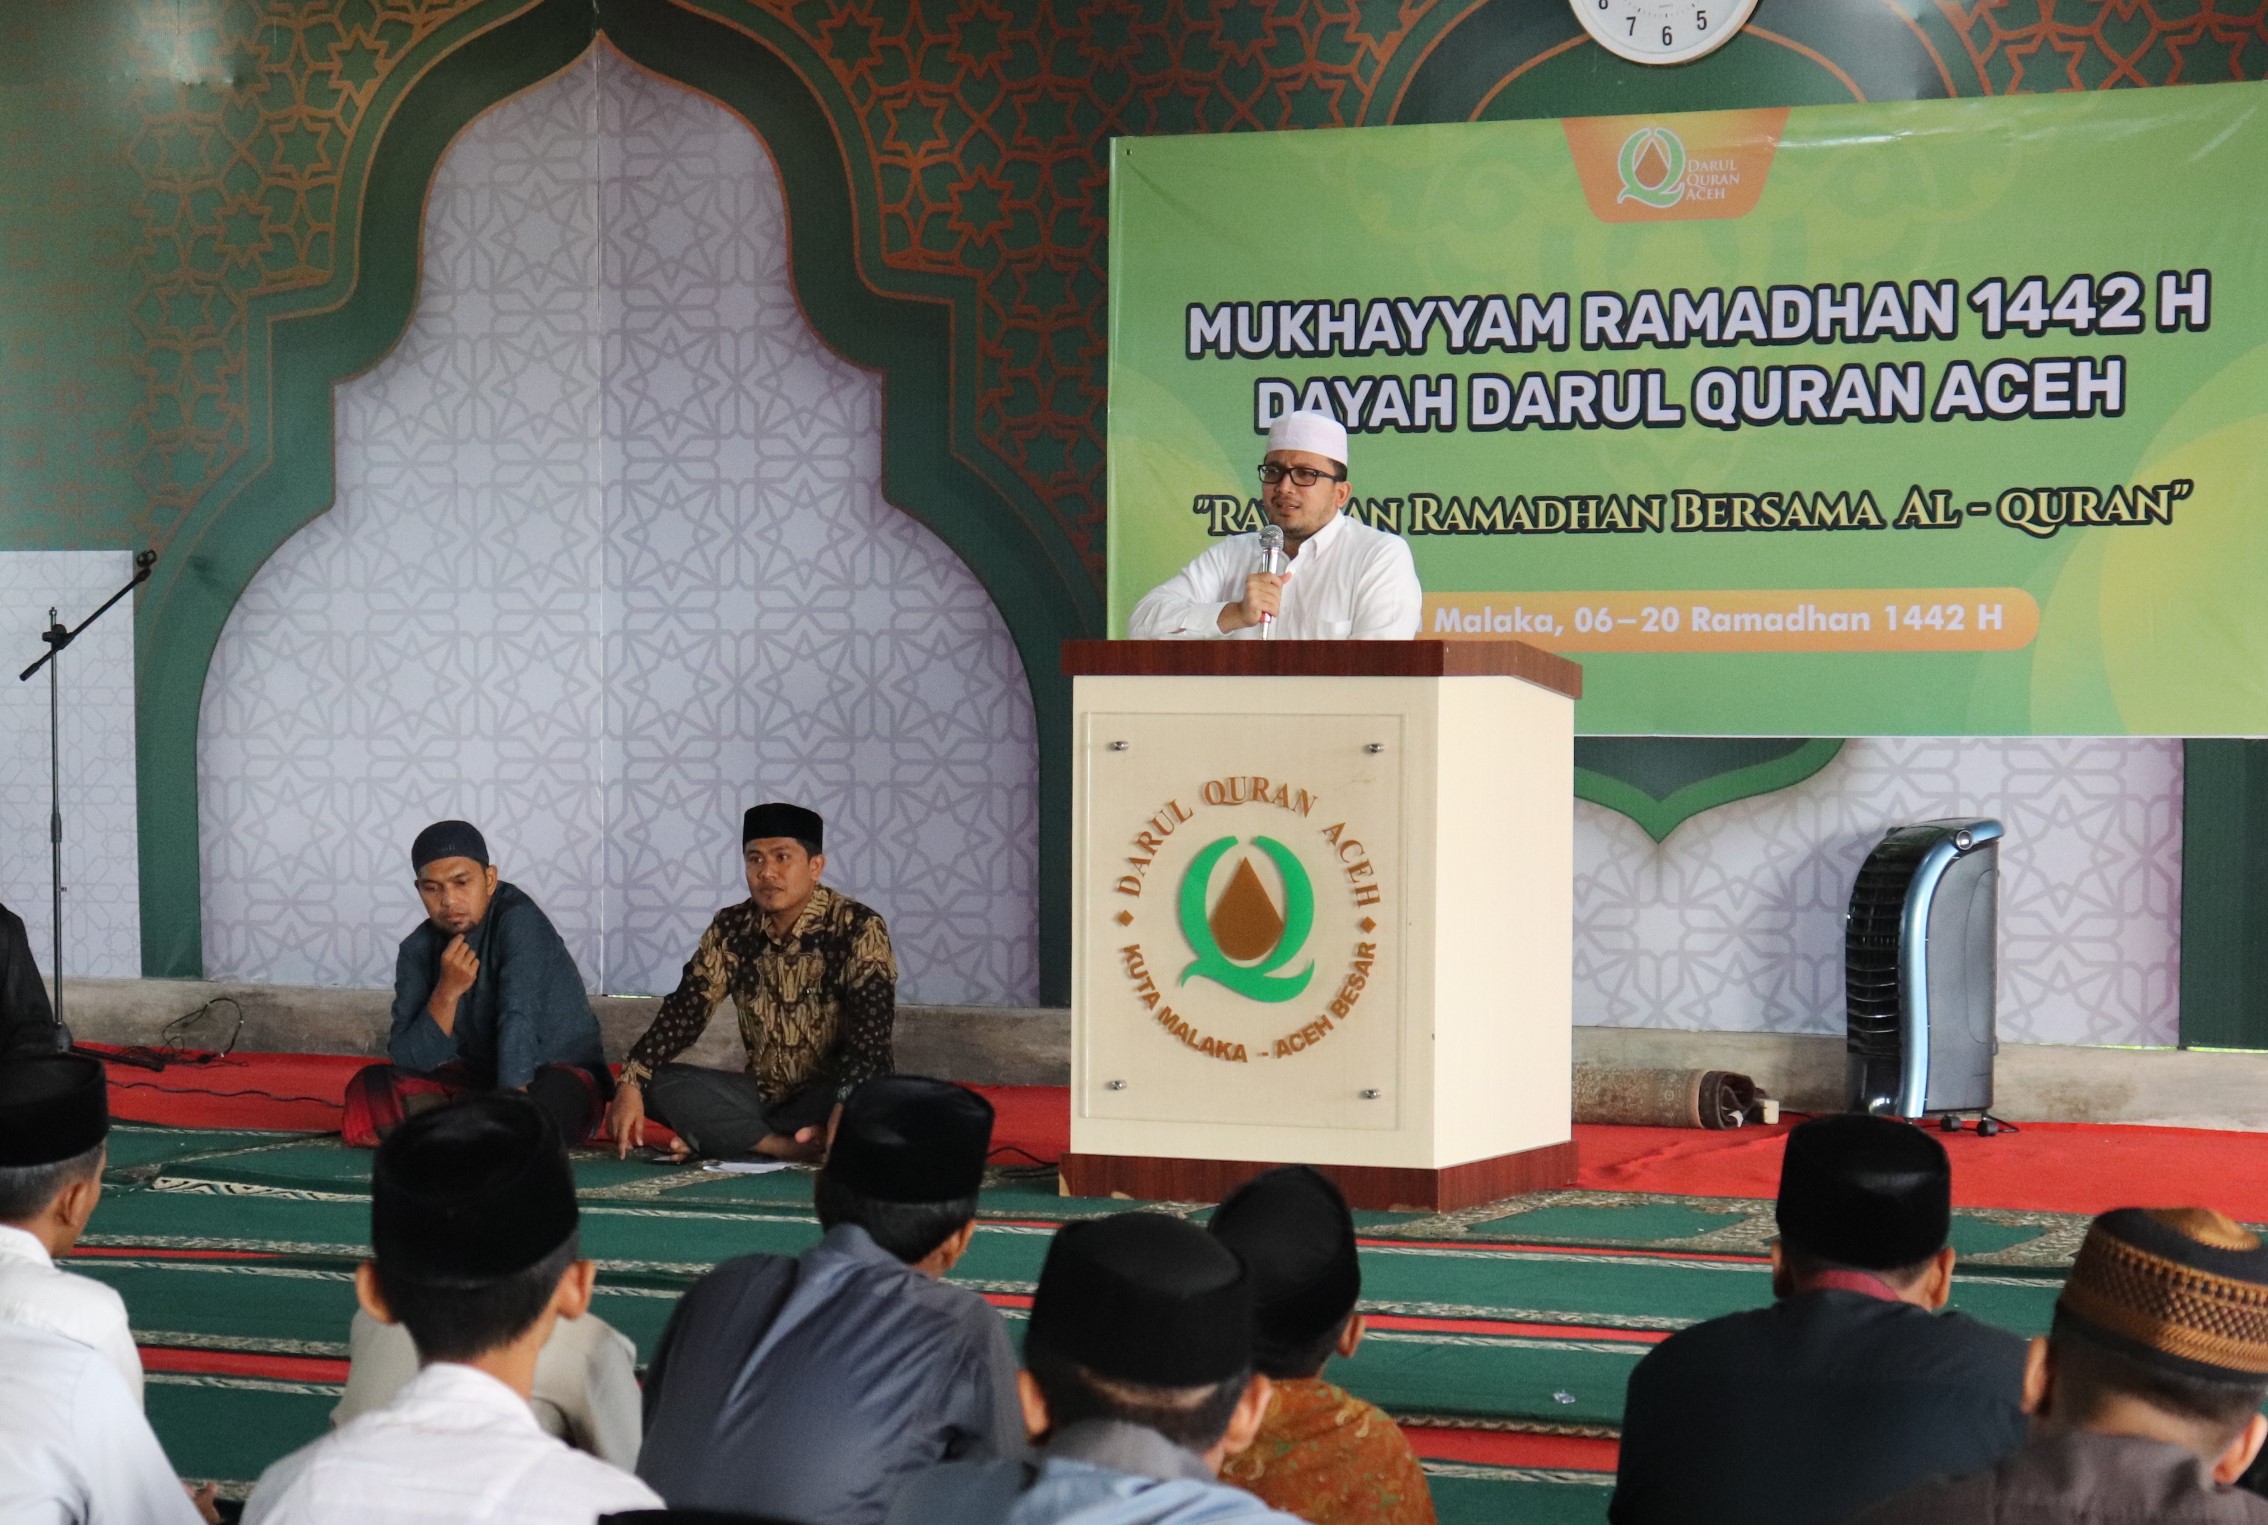 Dayah Darul Quran Aceh Gelar Mukhayyam Ramadhan